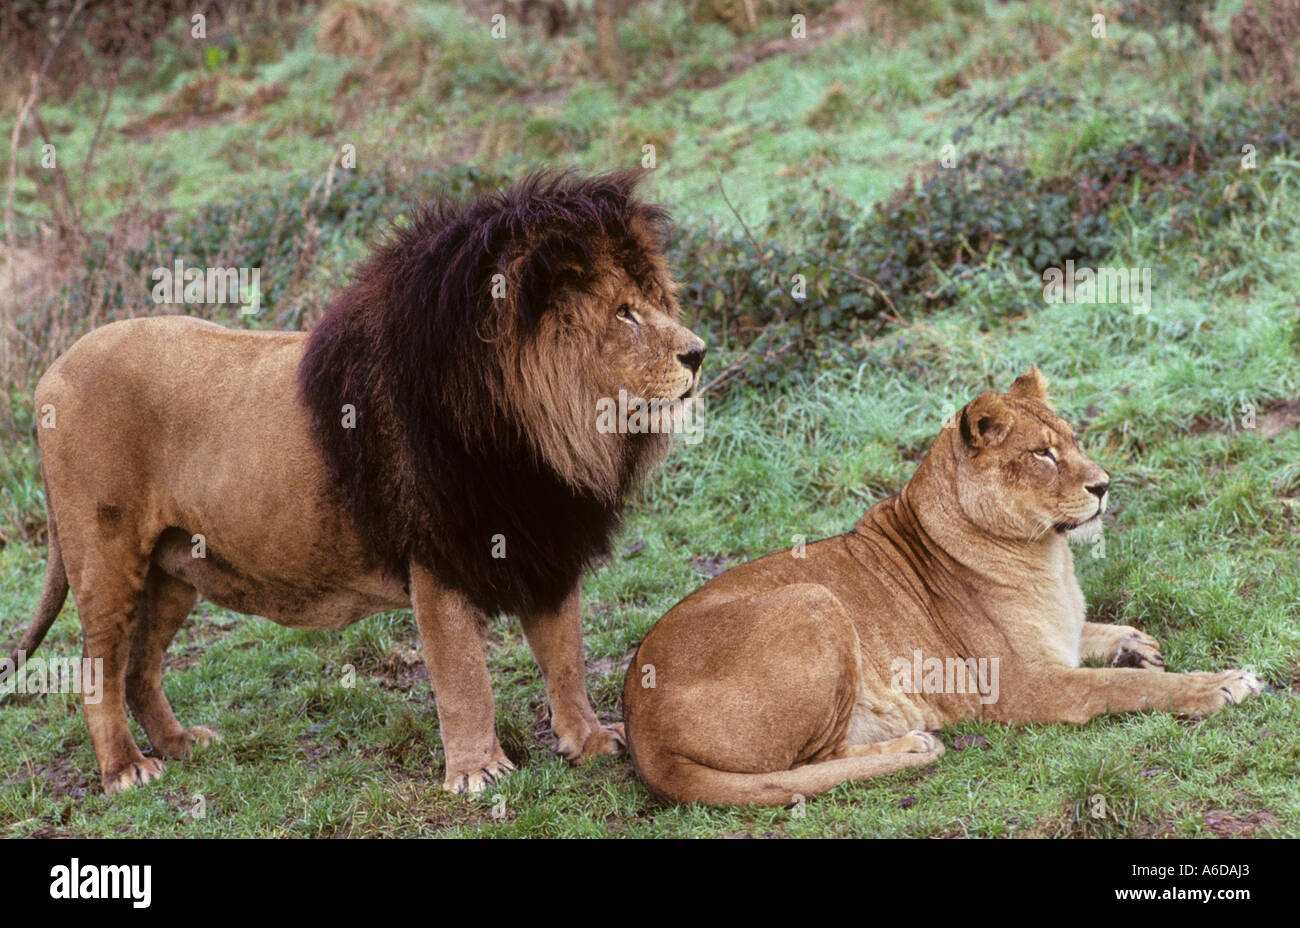 Le Lion De L Atlas Maroc Atlas ou Lion de Barbarie (Panthera leo Leo). Disparu dans la nature